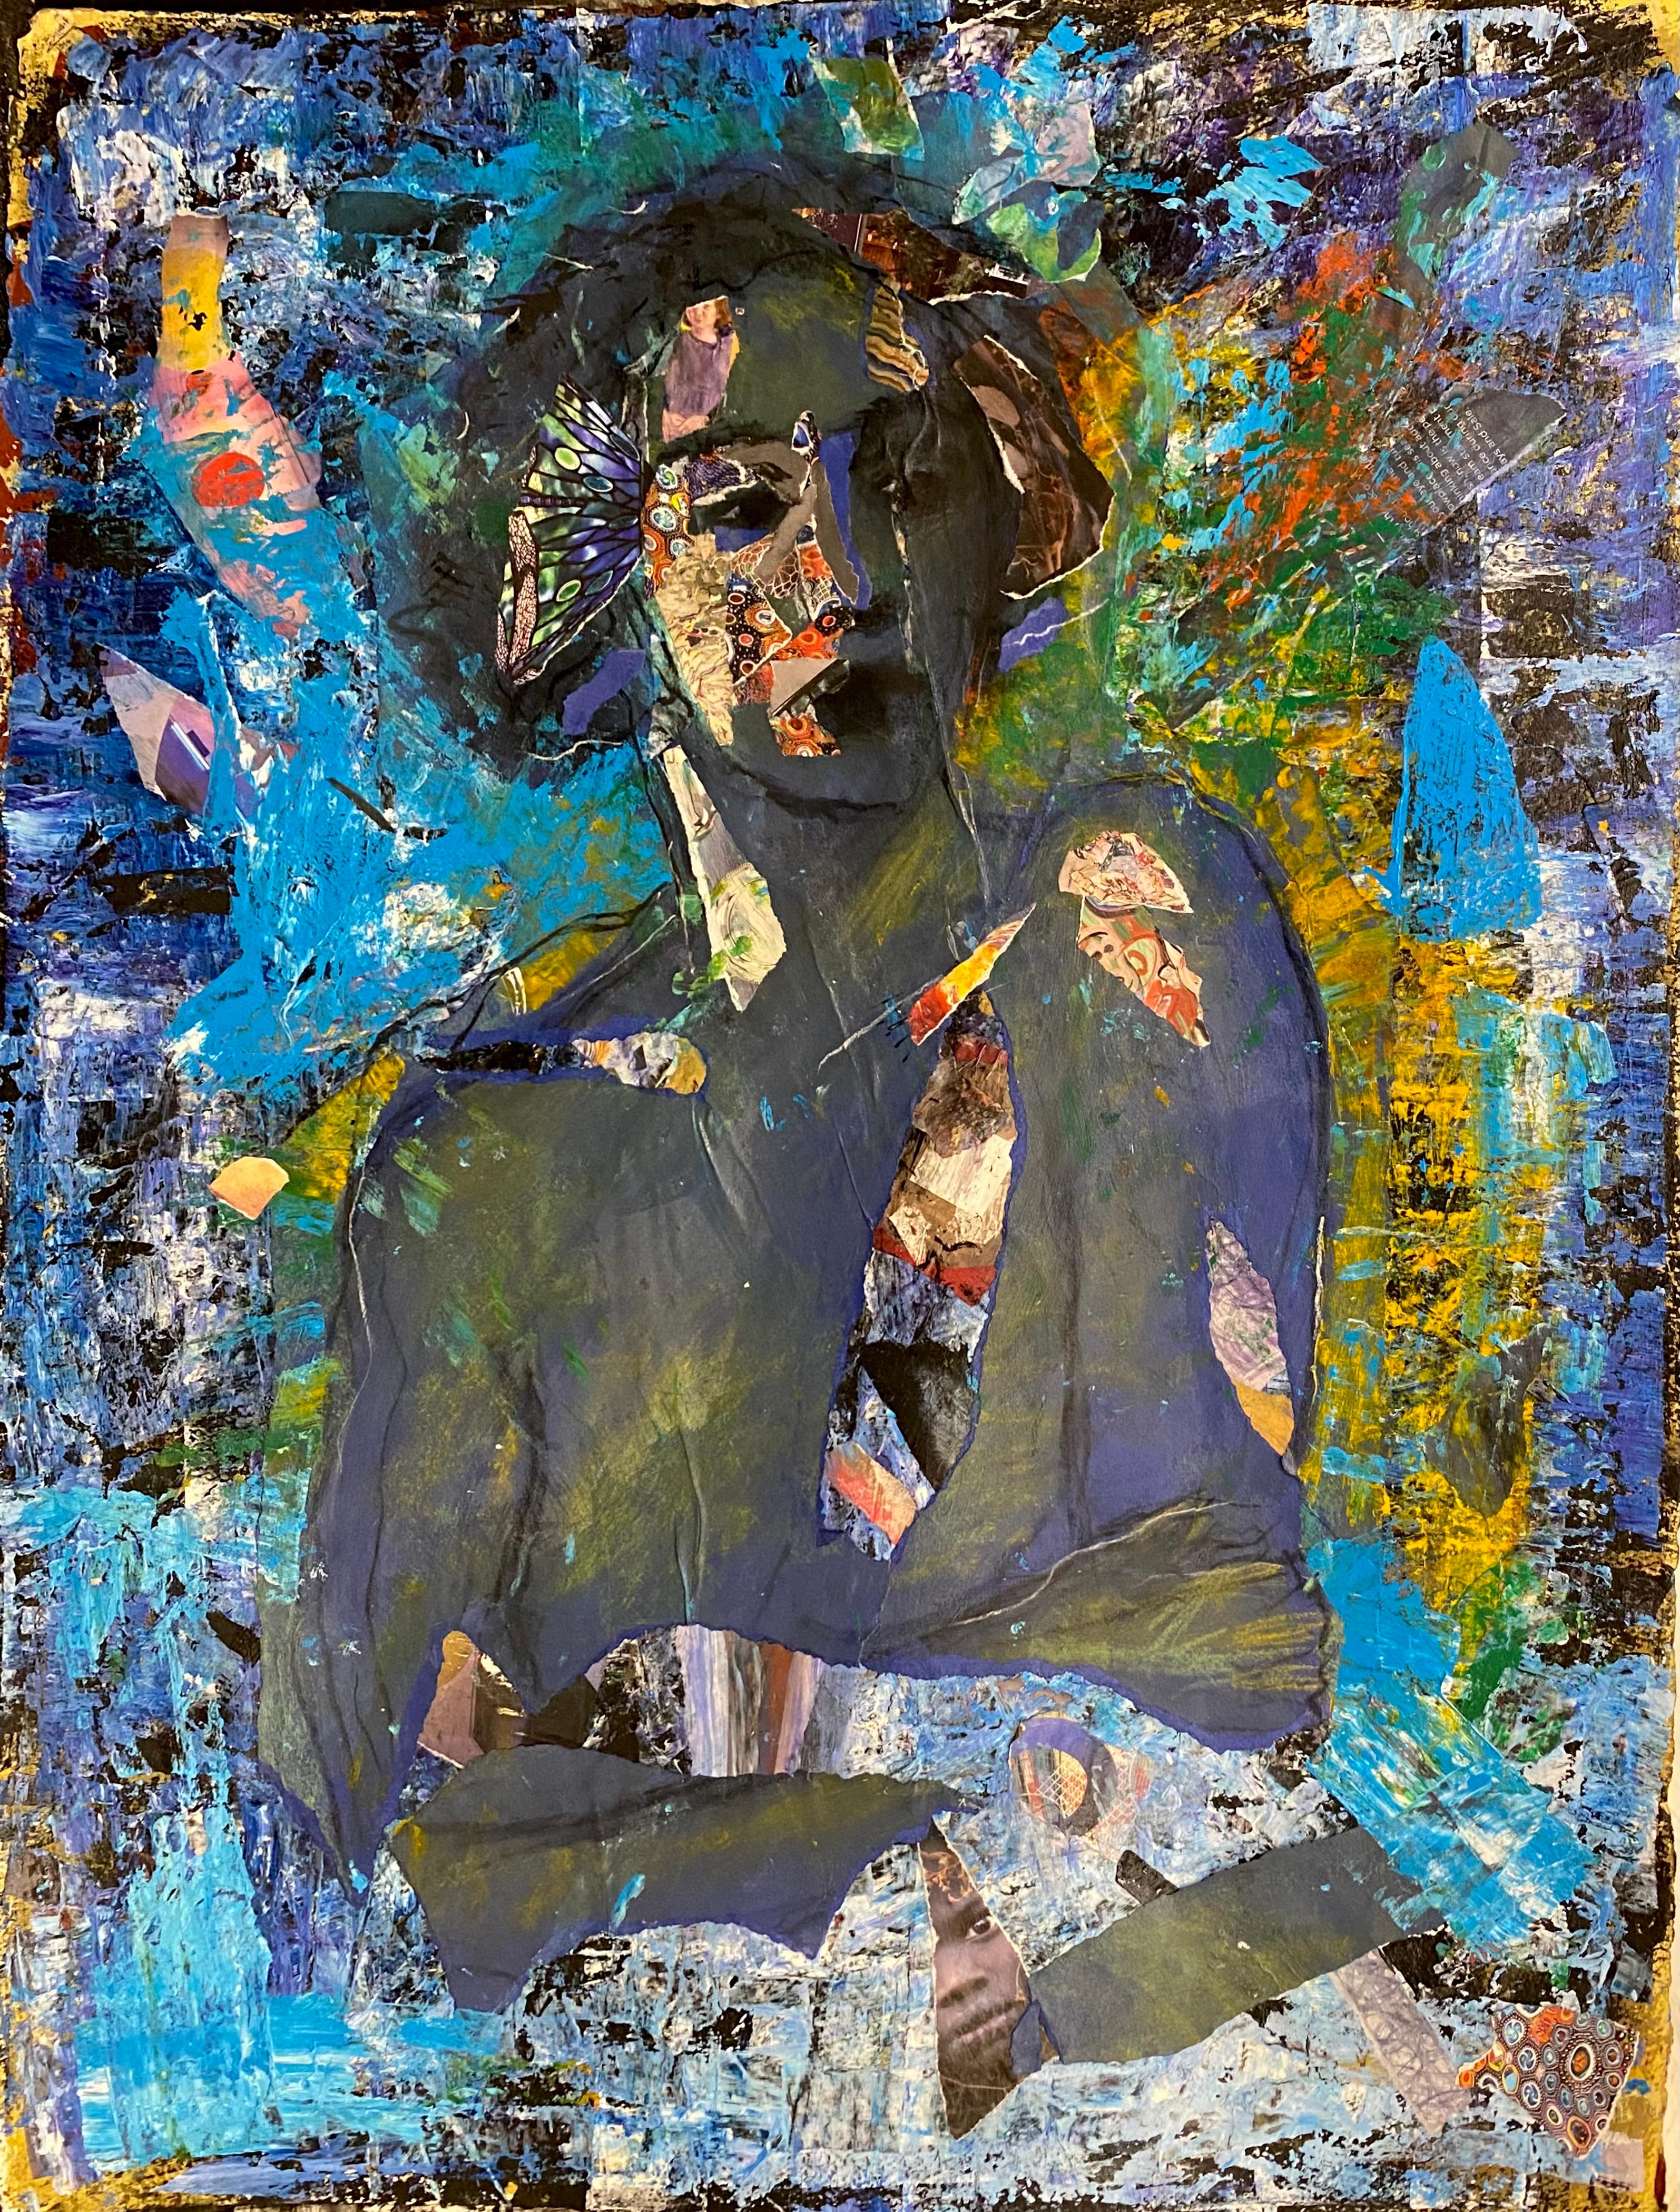 Blaues Indigo, Zeichnungscollage, weibliche Figur mit abstrakten Mustern, leuchtende Blautöne – Mixed Media Art von Audrey Anastasi